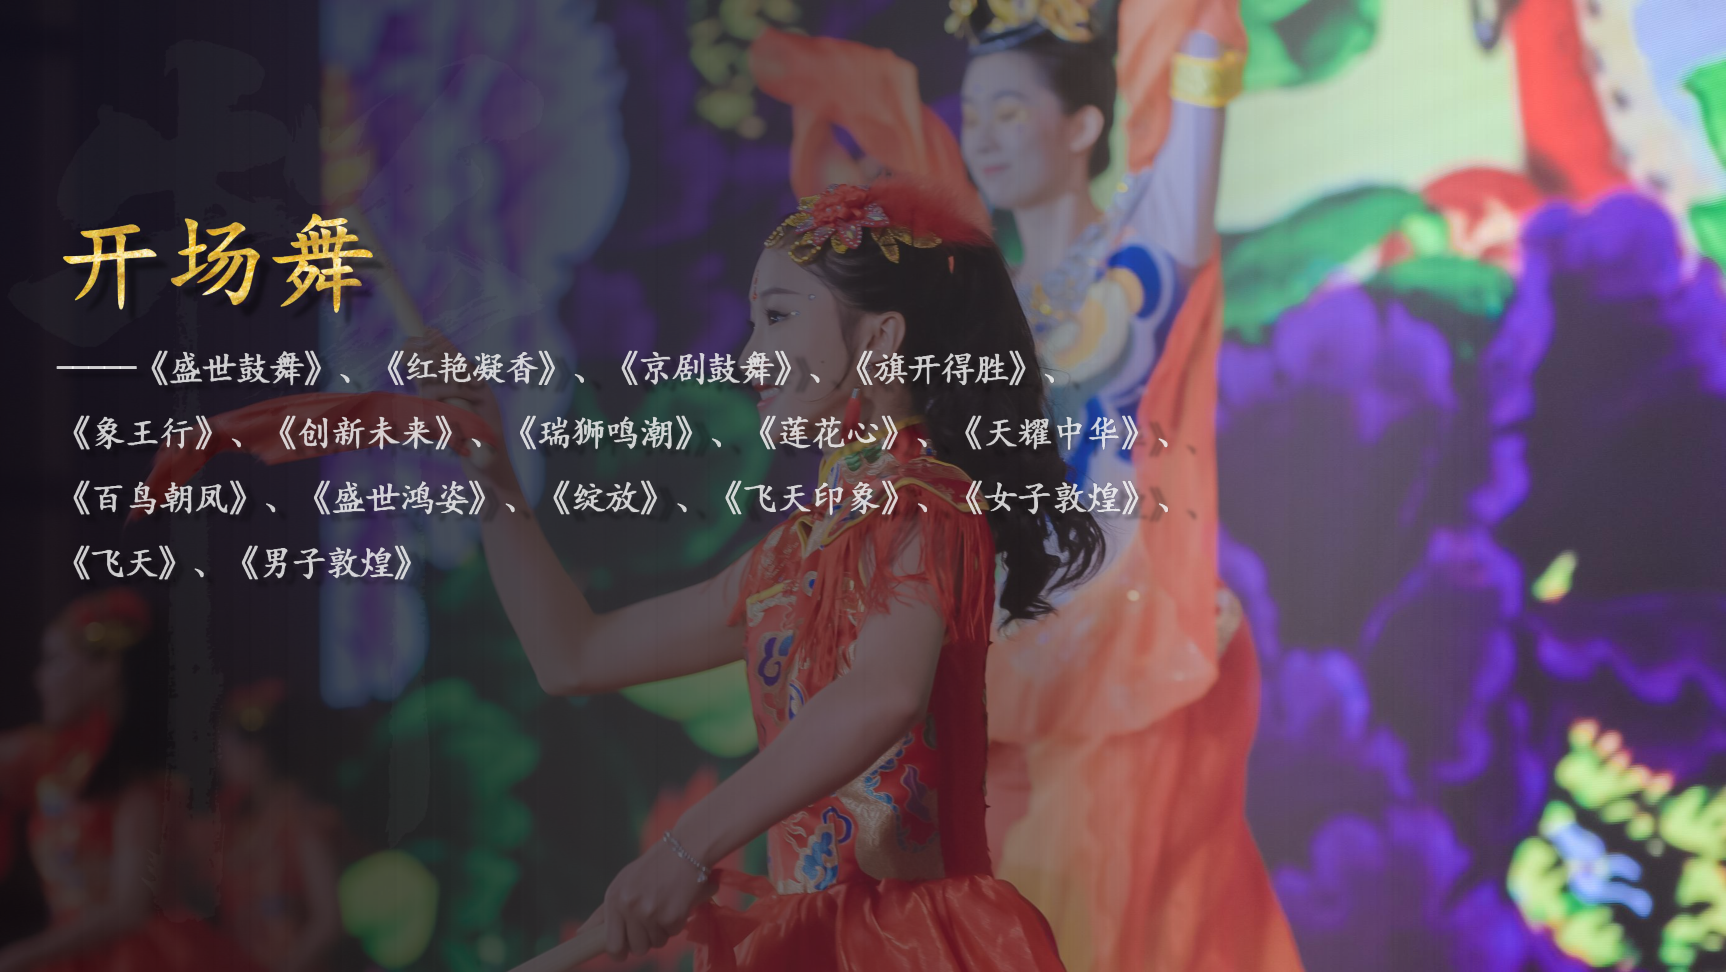 《傣族舞》民族舞蹈节目